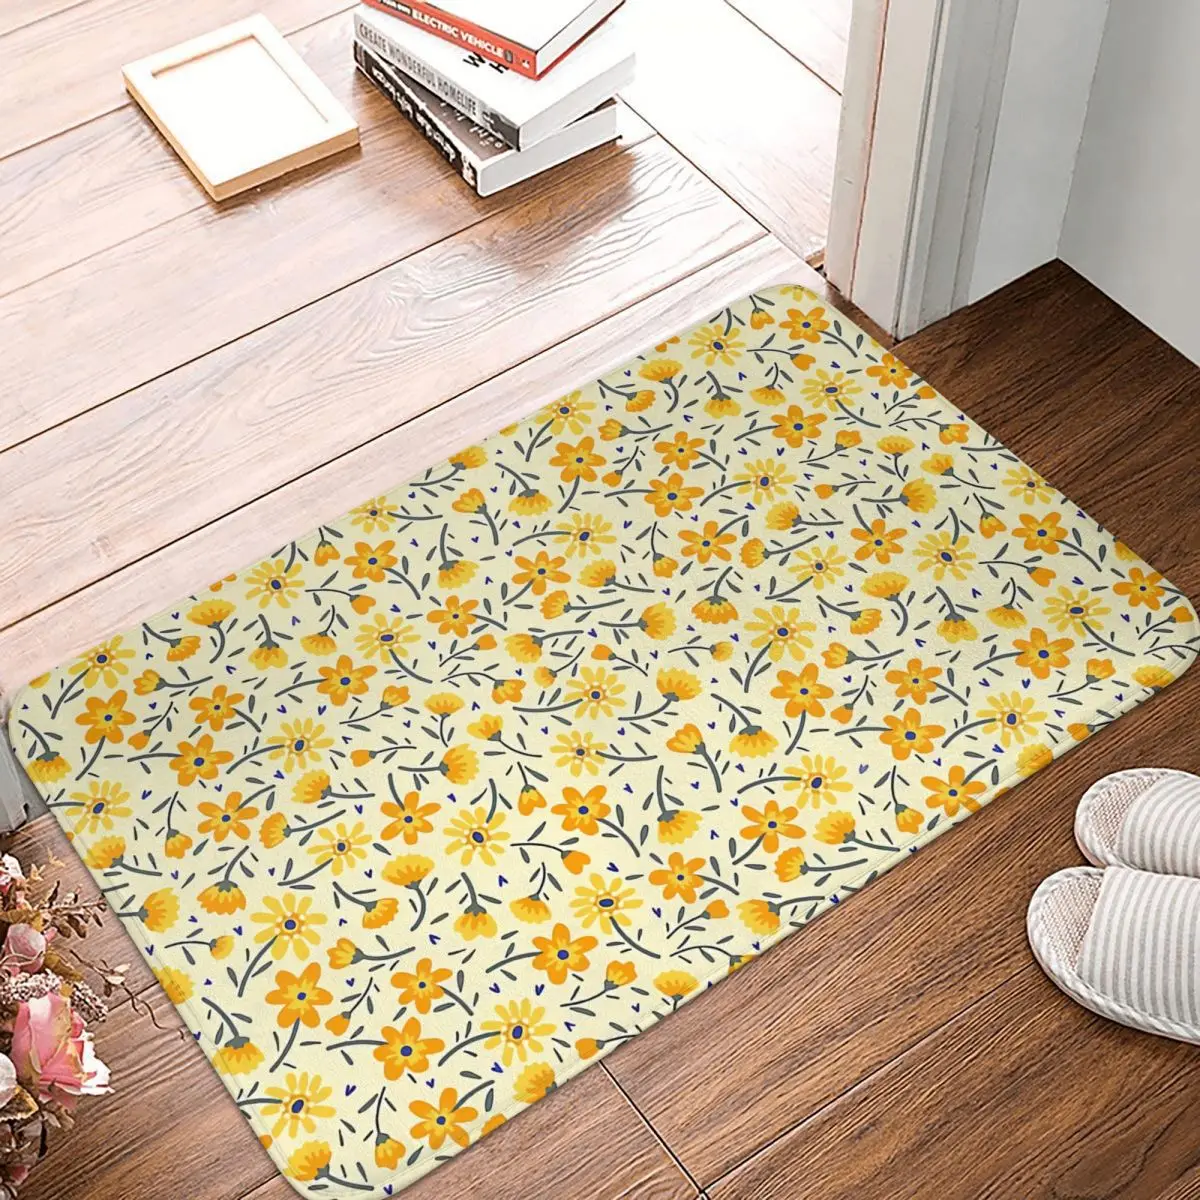 

Wildflower Bedroom Mat Small Yellow Flowers Pattern Doormat Kitchen Carpet Entrance Door Rug Home Decoration